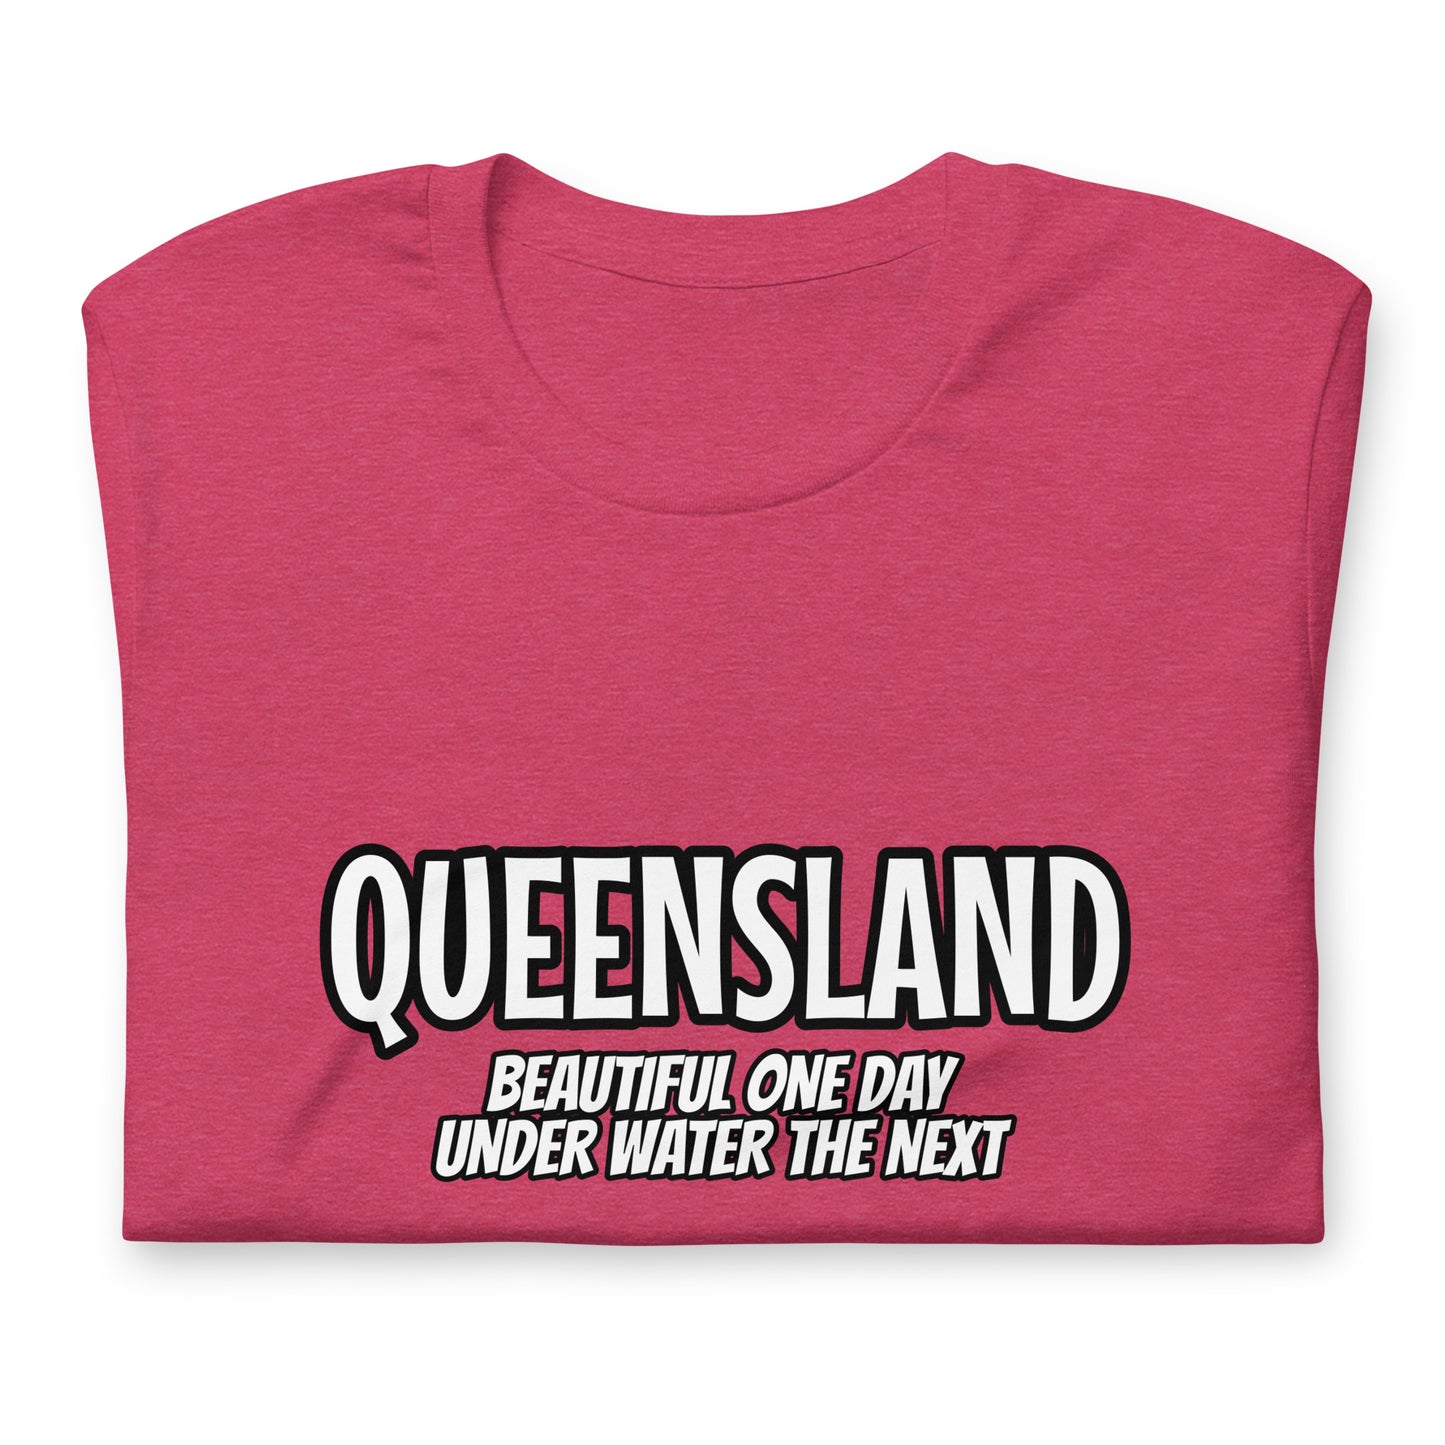 Beautiful Queensland